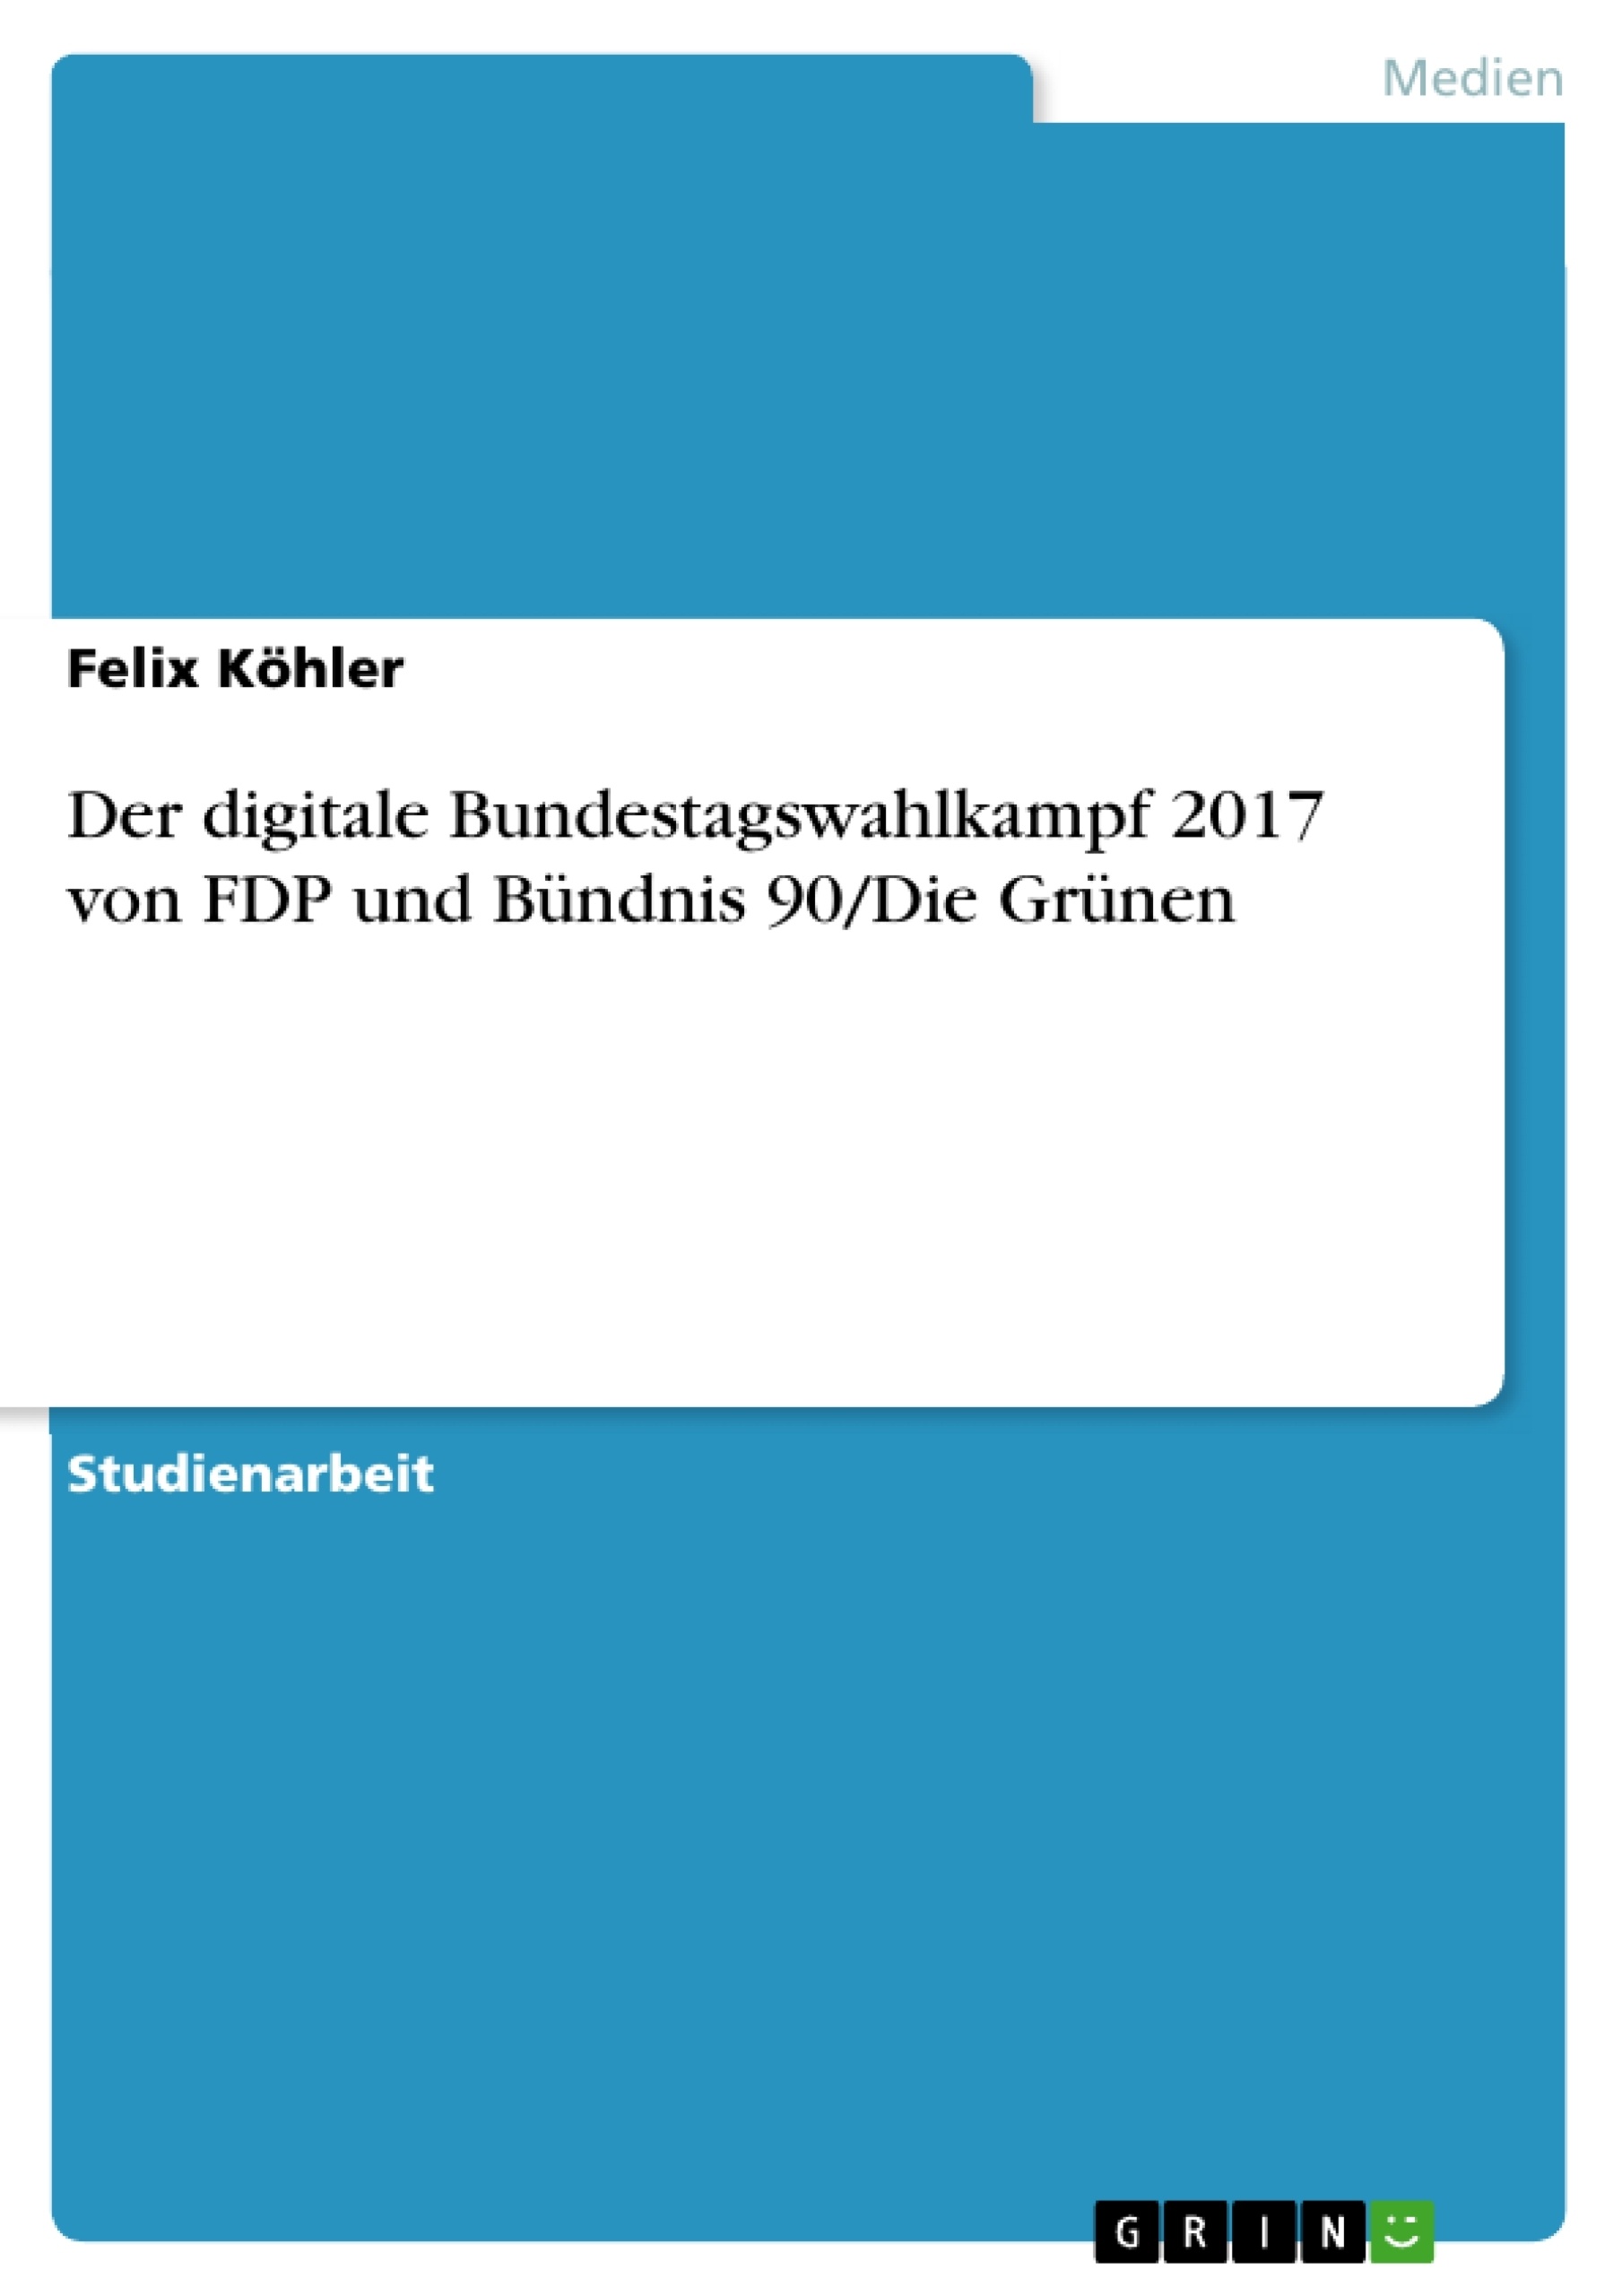 Titre: Der digitale Bundestagswahlkampf 2017 von FDP und Bündnis 90/Die Grünen